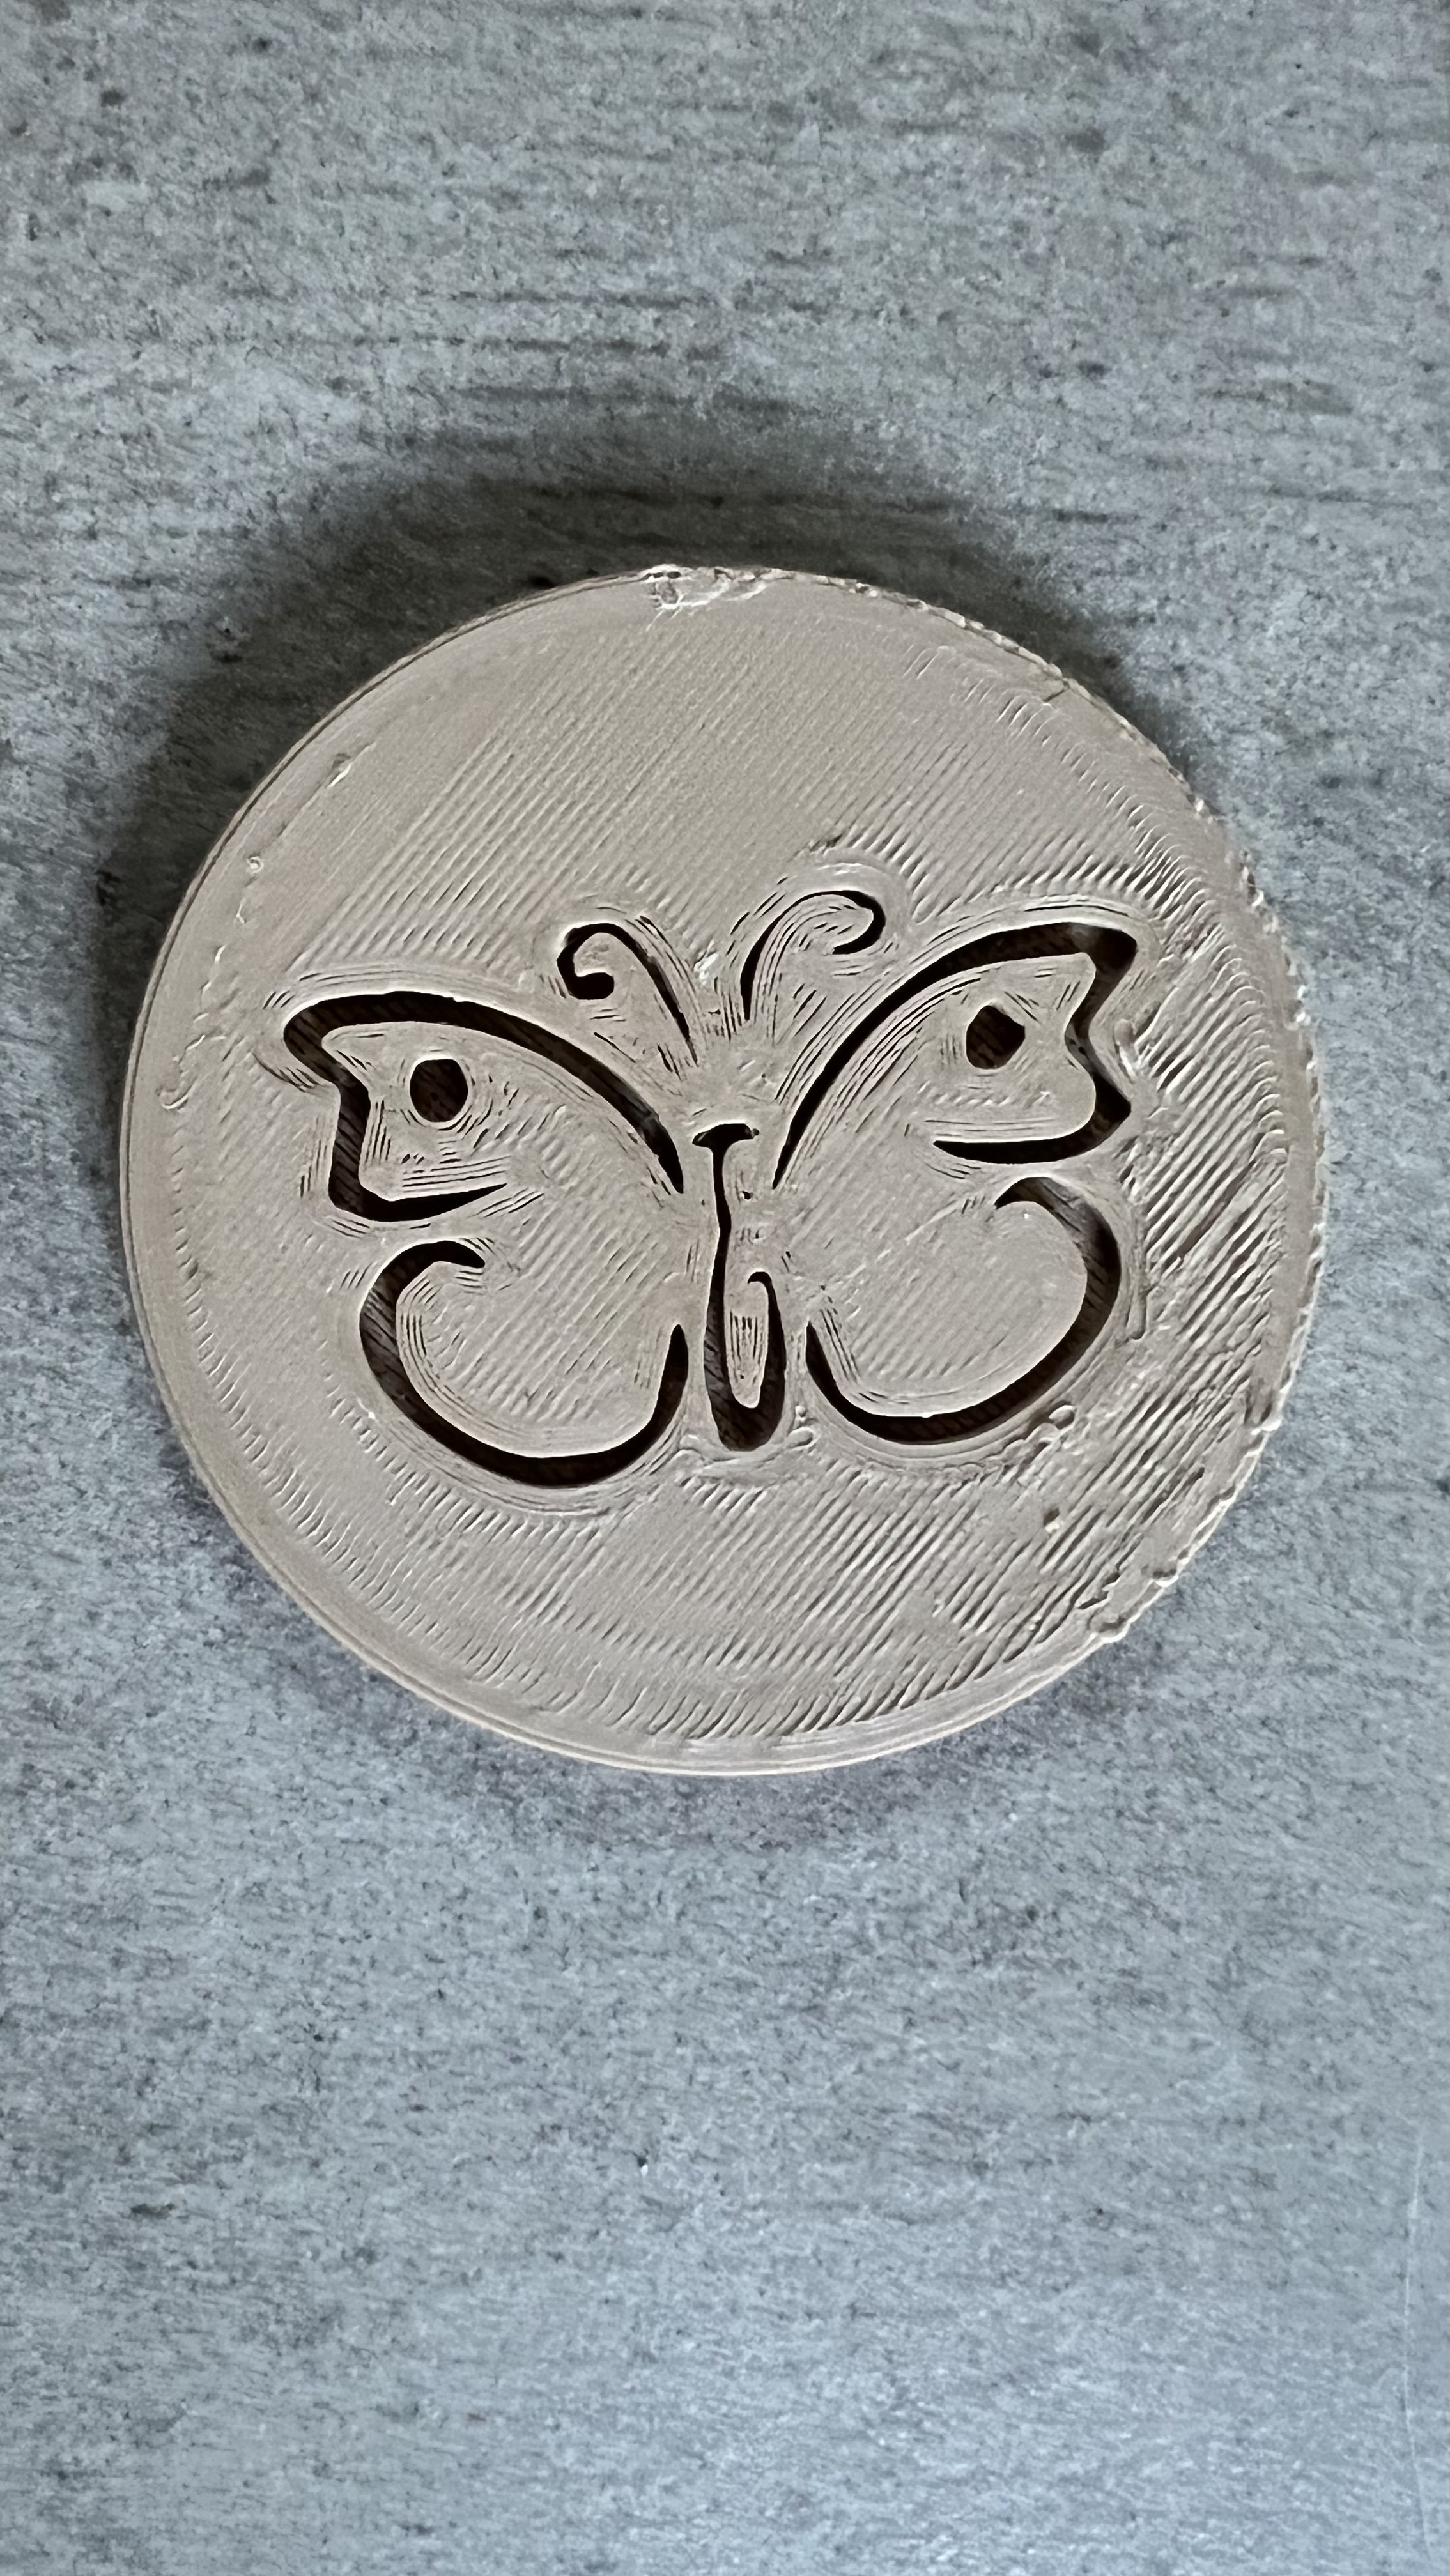 Dessous de verre Papillon / Butterfly Coaster